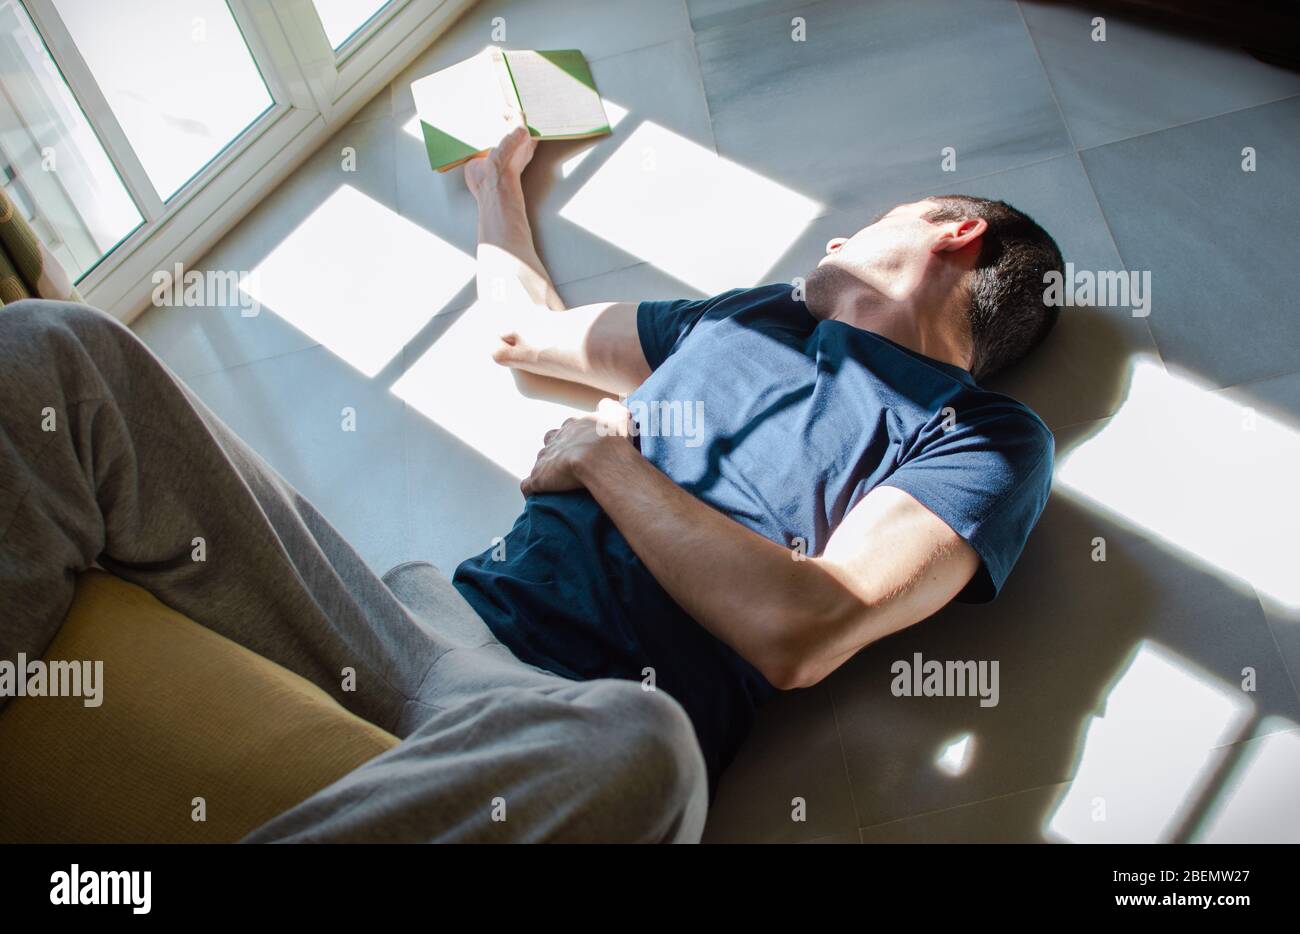 Un joven aburrido se aloja en casa. Hombre acostado en el suelo leyendo y disfrutando del sol de la ventana. Concepto de estancia en casa, aburrimiento, libertad, soledad. Foto de stock